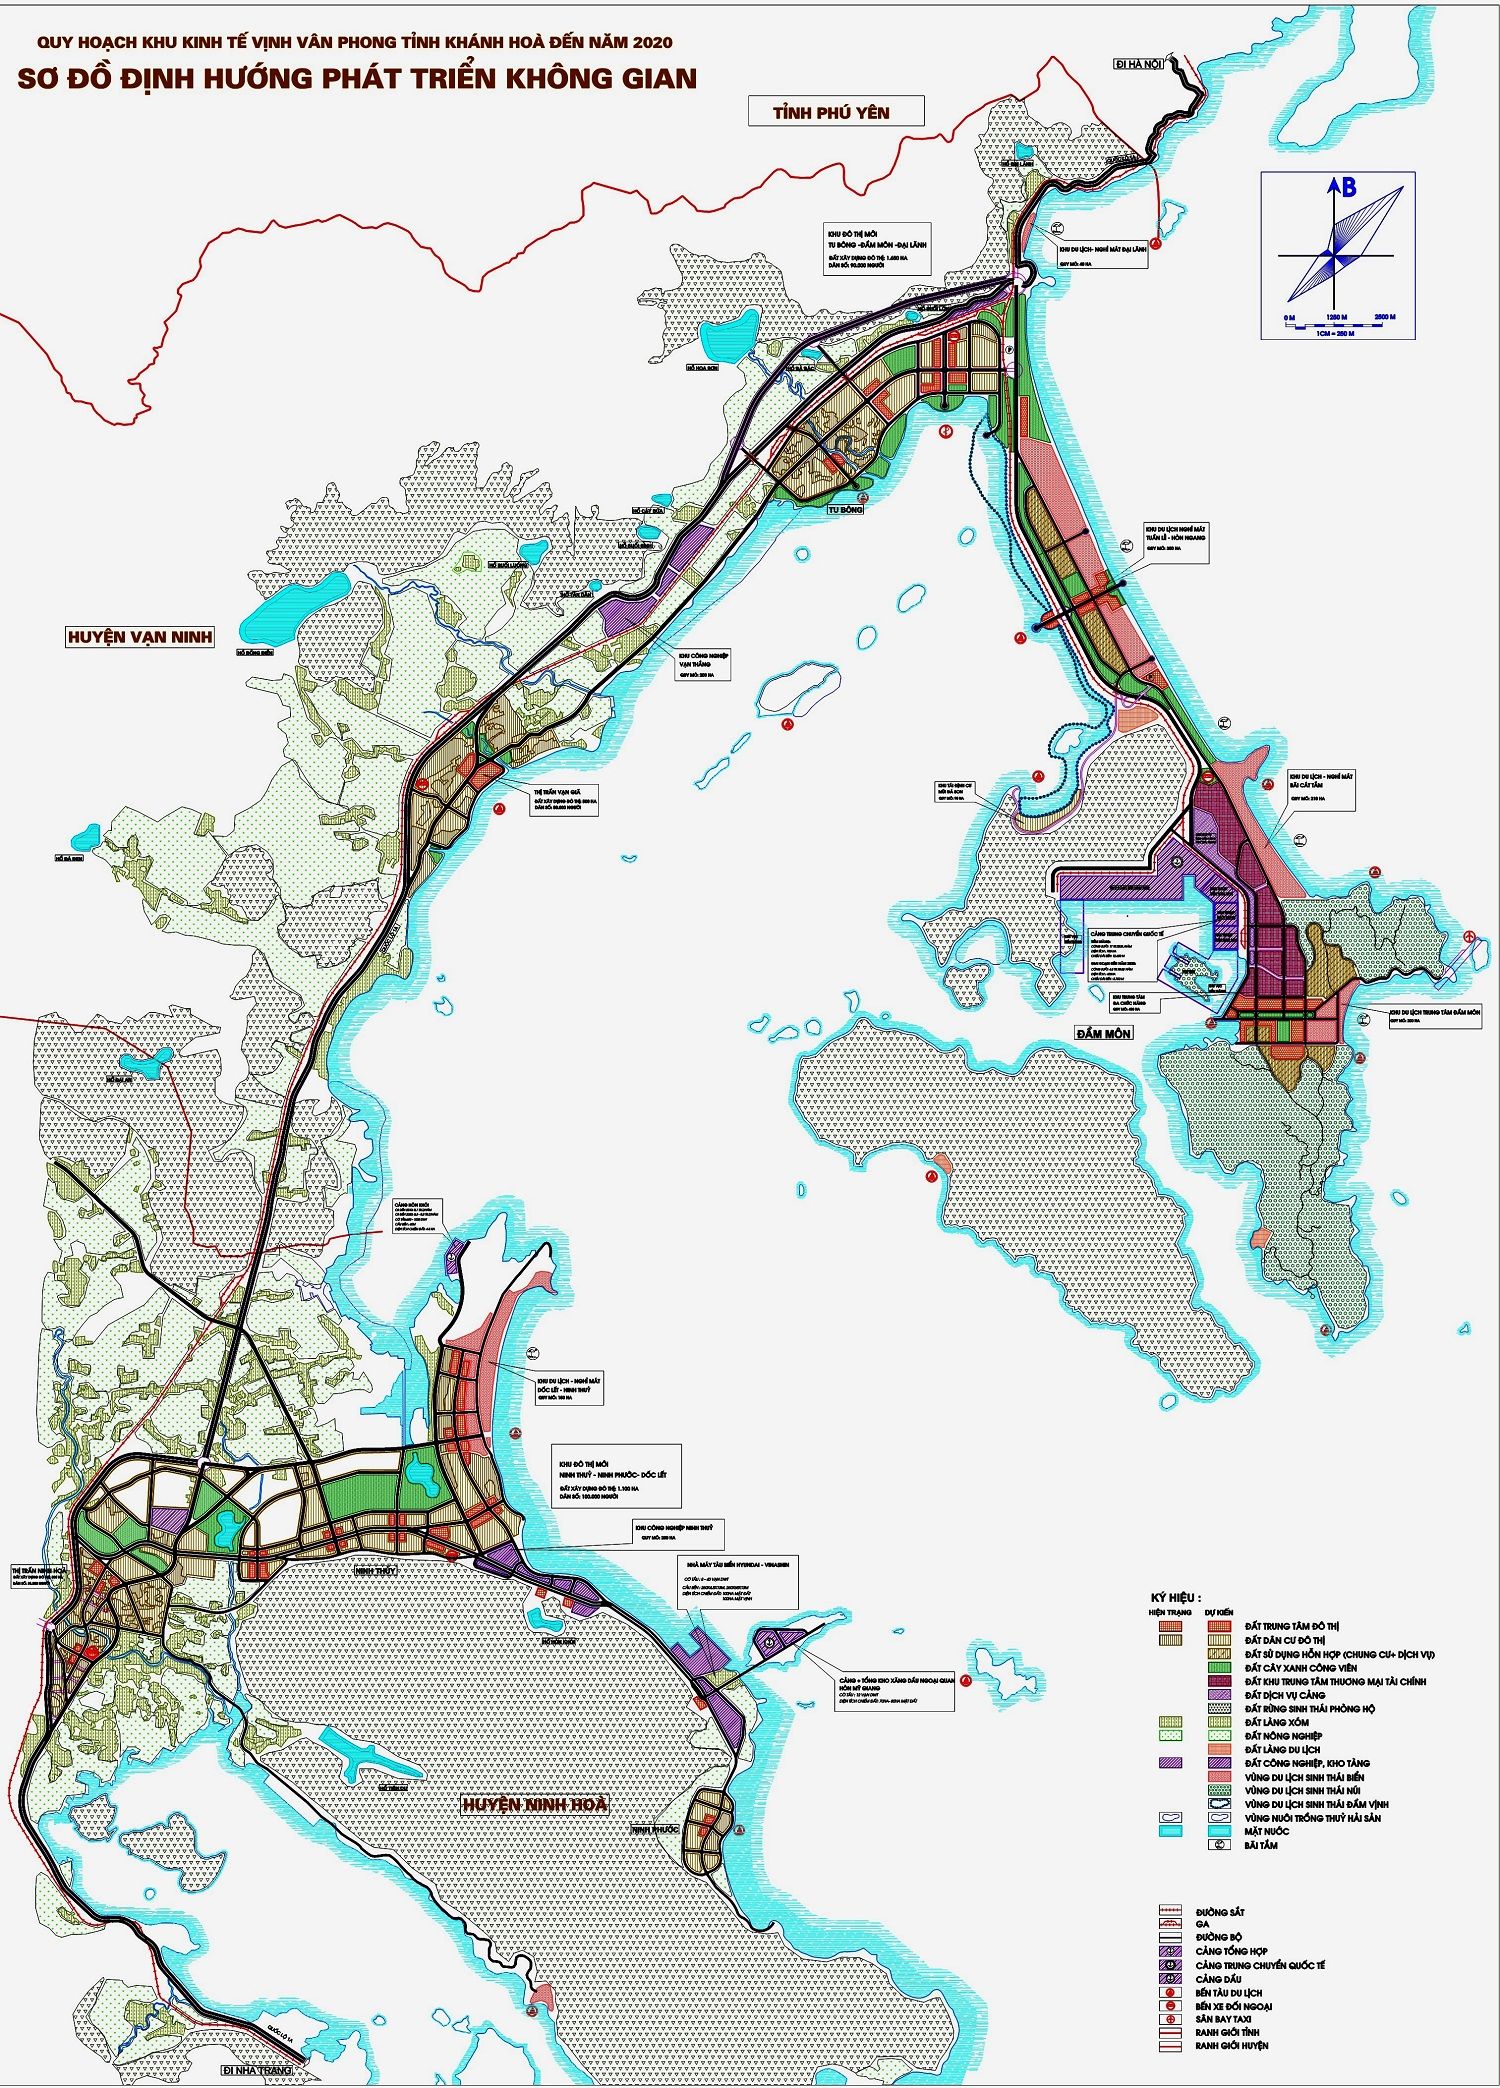 Bản đồ quy hoạch chung khu kinh tế Vân Phong, Khánh Hòa đến năm 2020